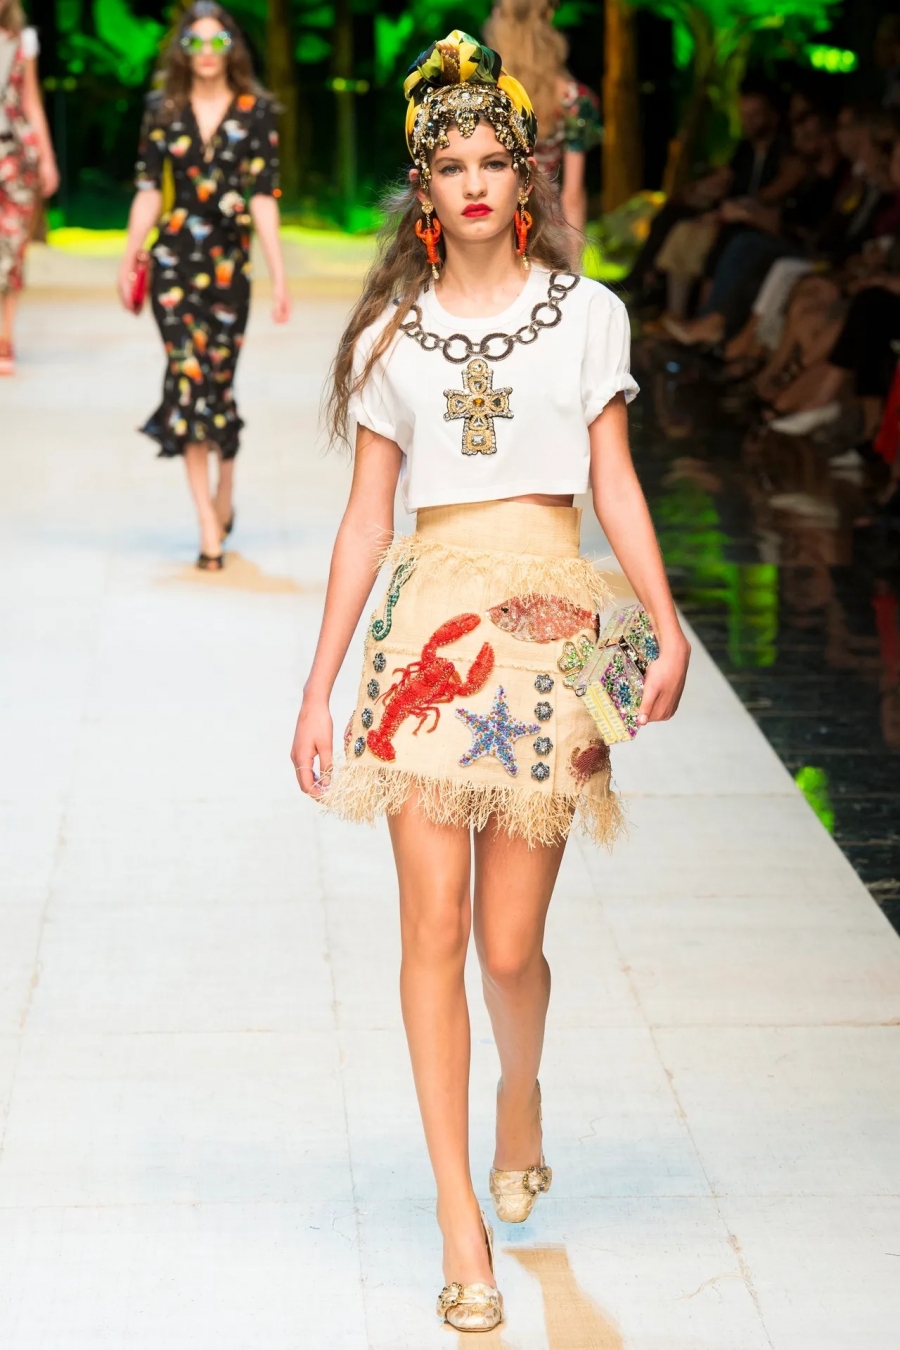 Dolce&Gabbana - thương hiệu theo đuổi phong cách Địa Trung Hải cũng đưa hình ảnh chú tôm hùm vào các BST lấy cảm hứng từ đại dương của mình.